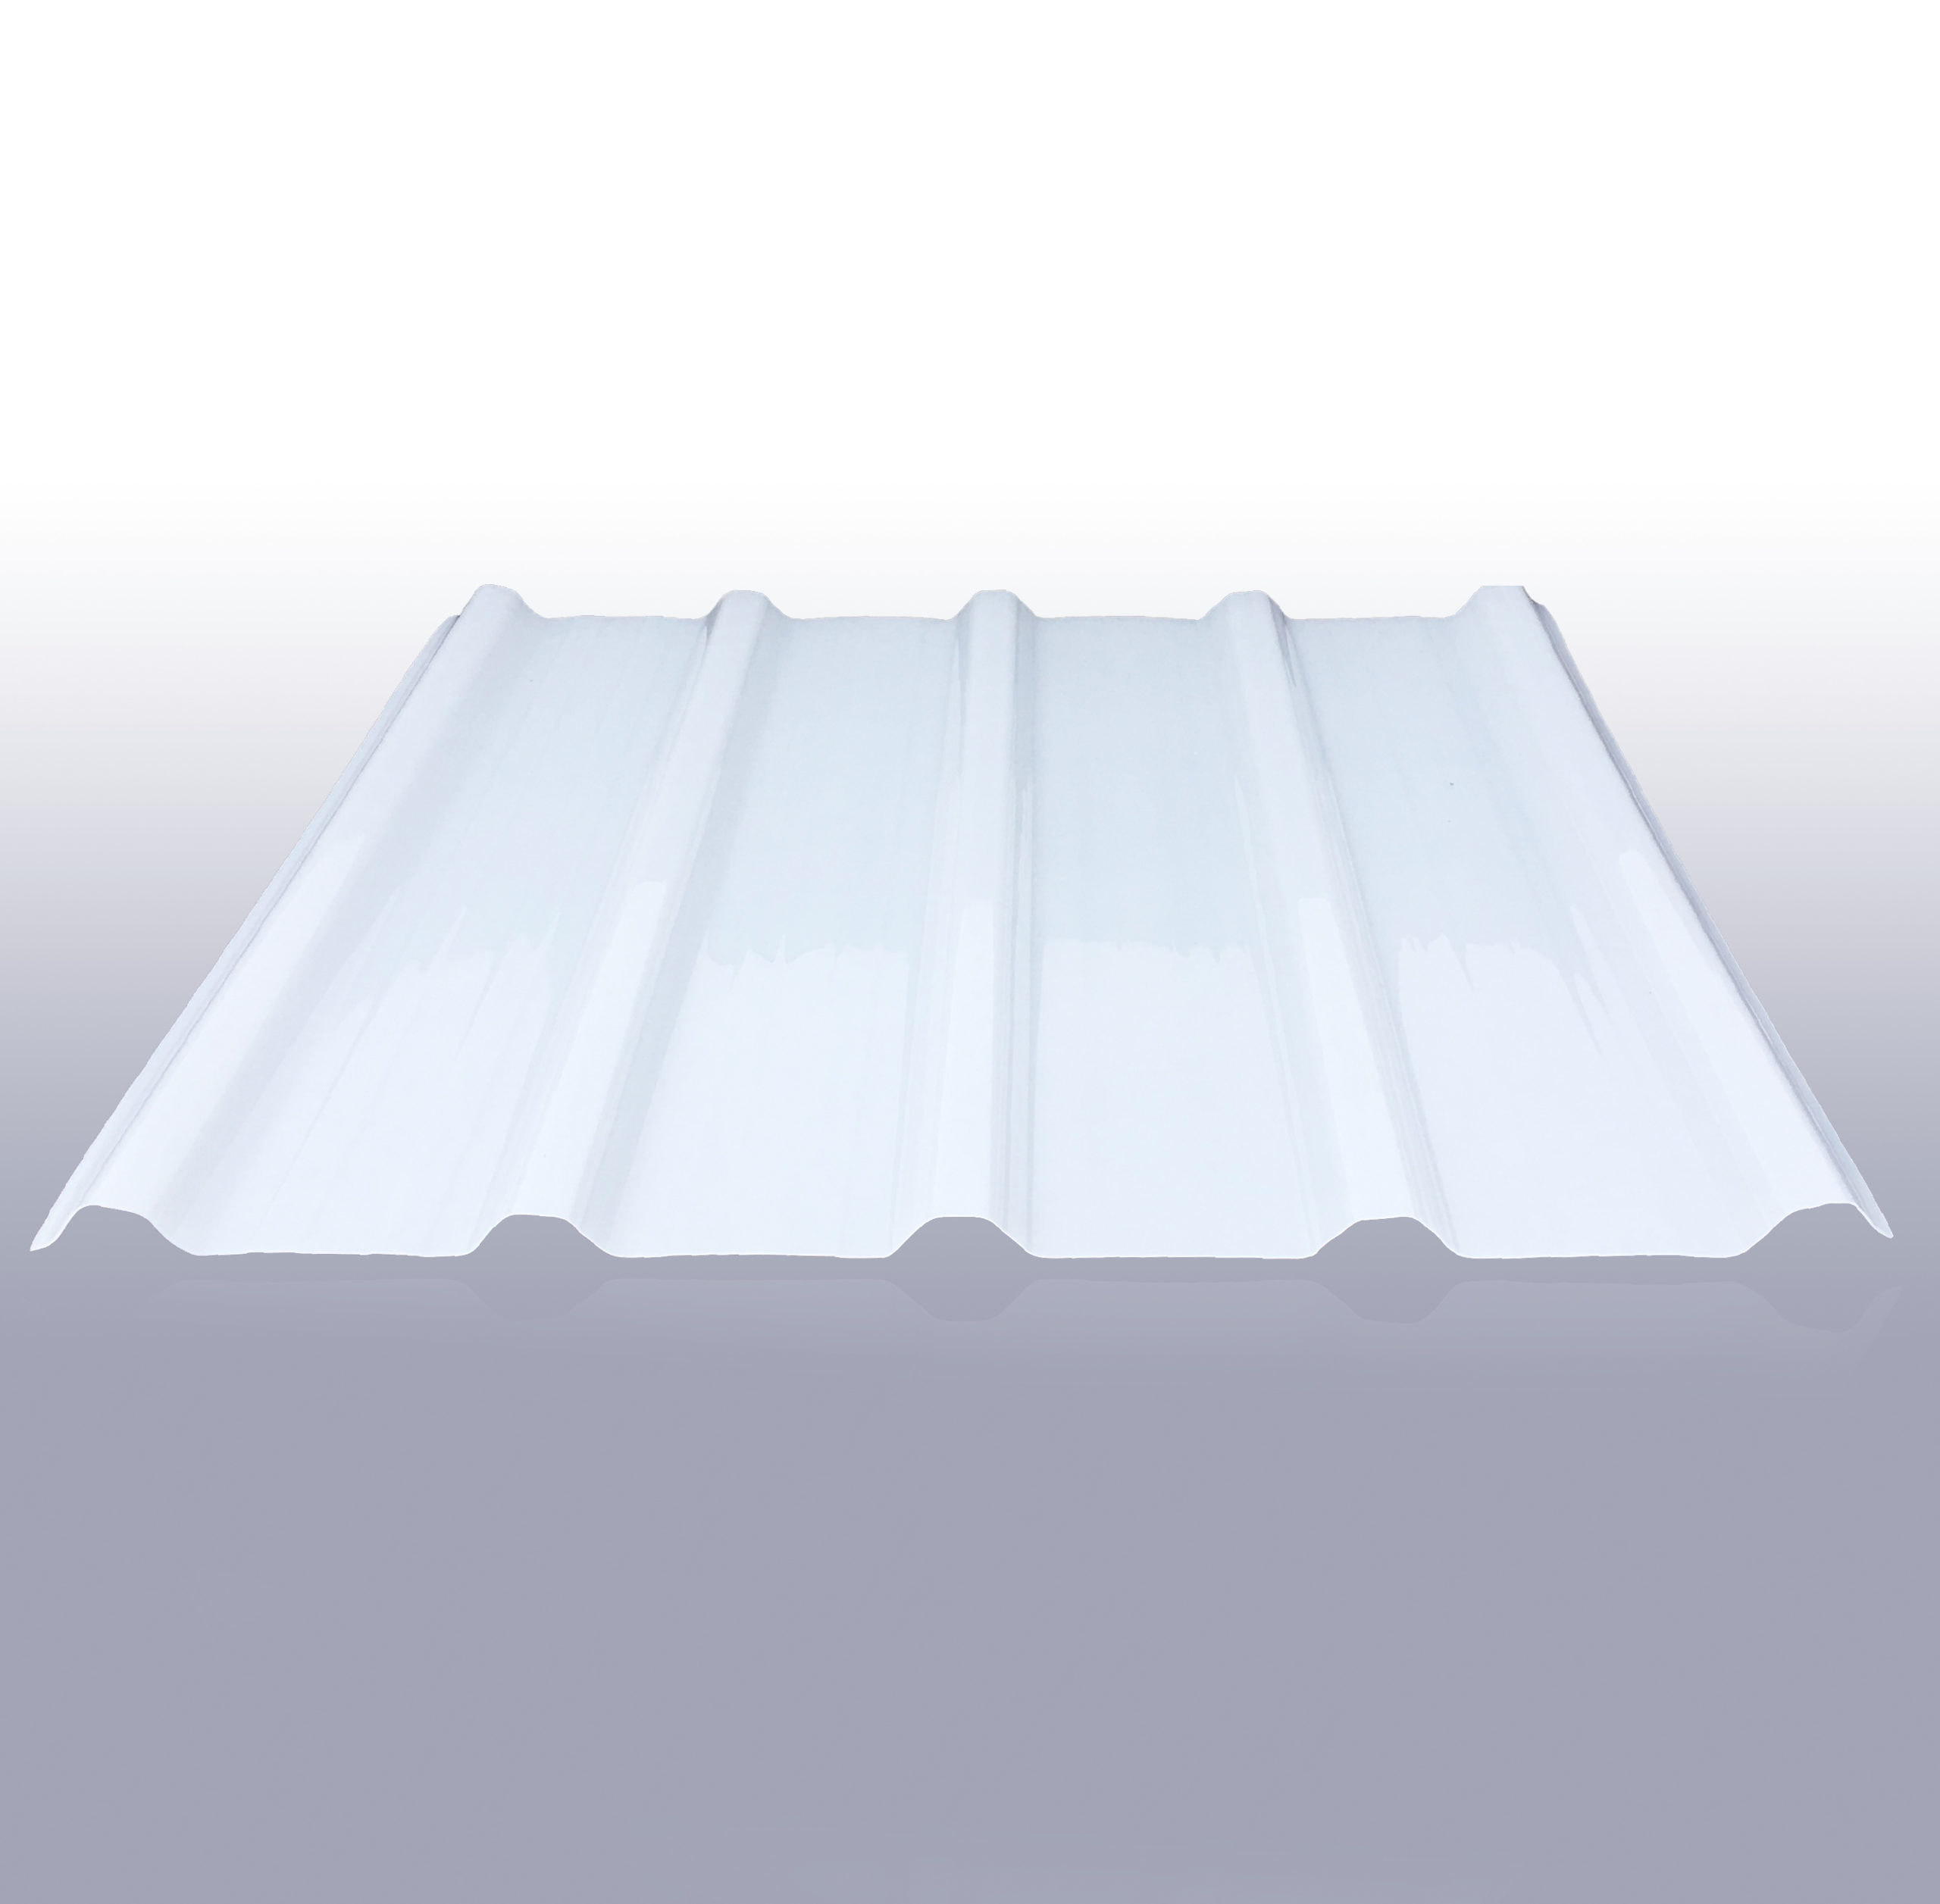 Placa de policarbonato celular Ópalo (3 m x 0,98 m x 10 mm, Policarbonato,  Opal)